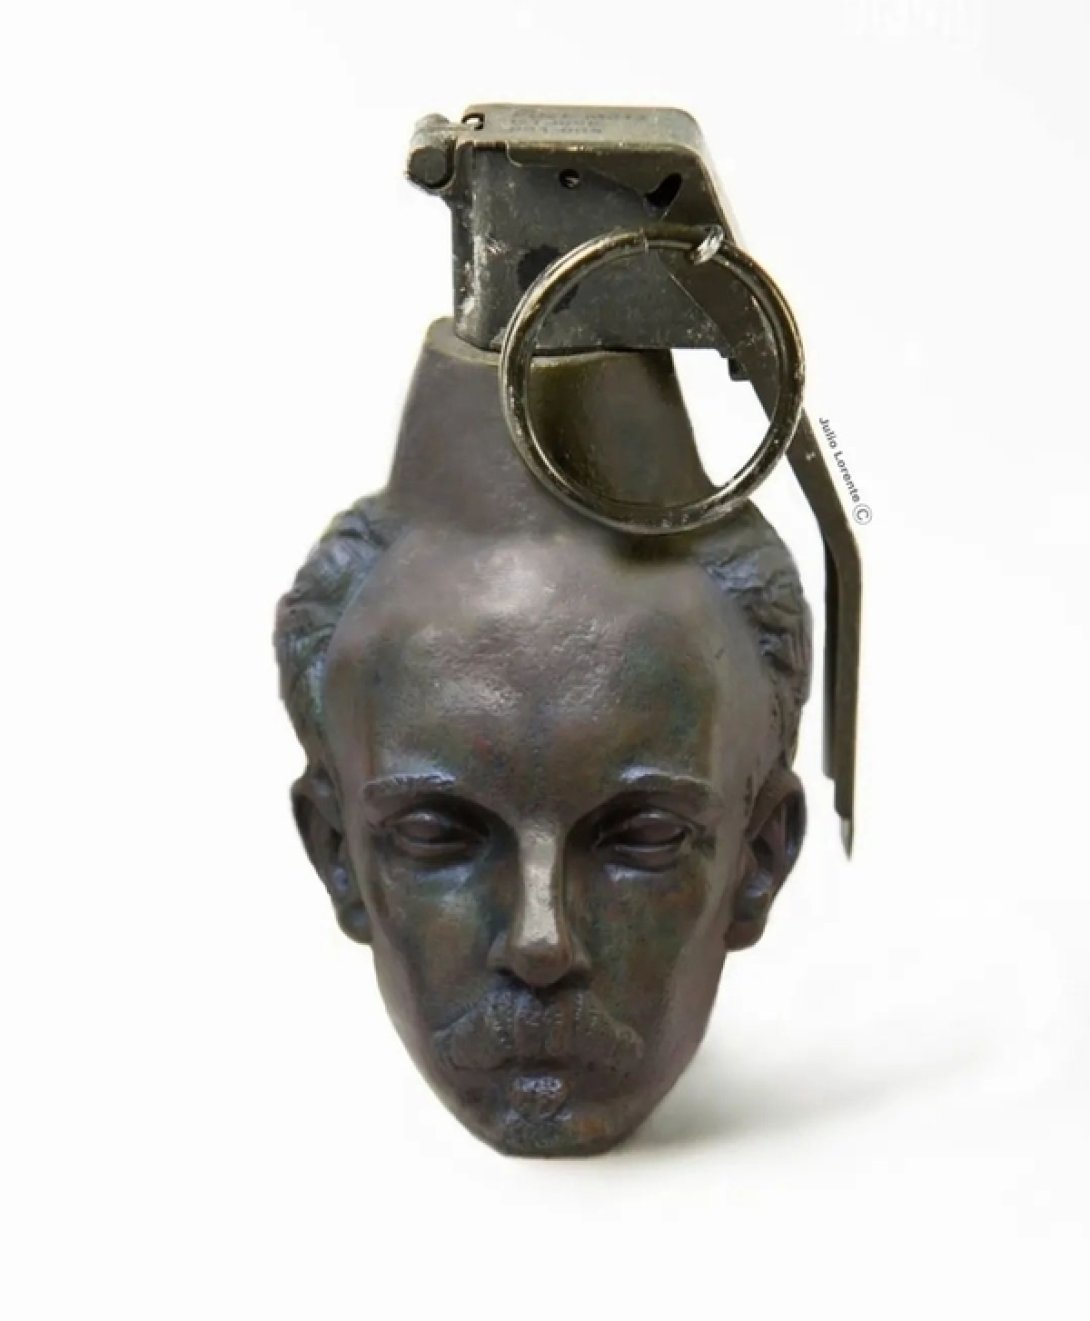 Representación de la cabeza de José Martí fundida con una granada.